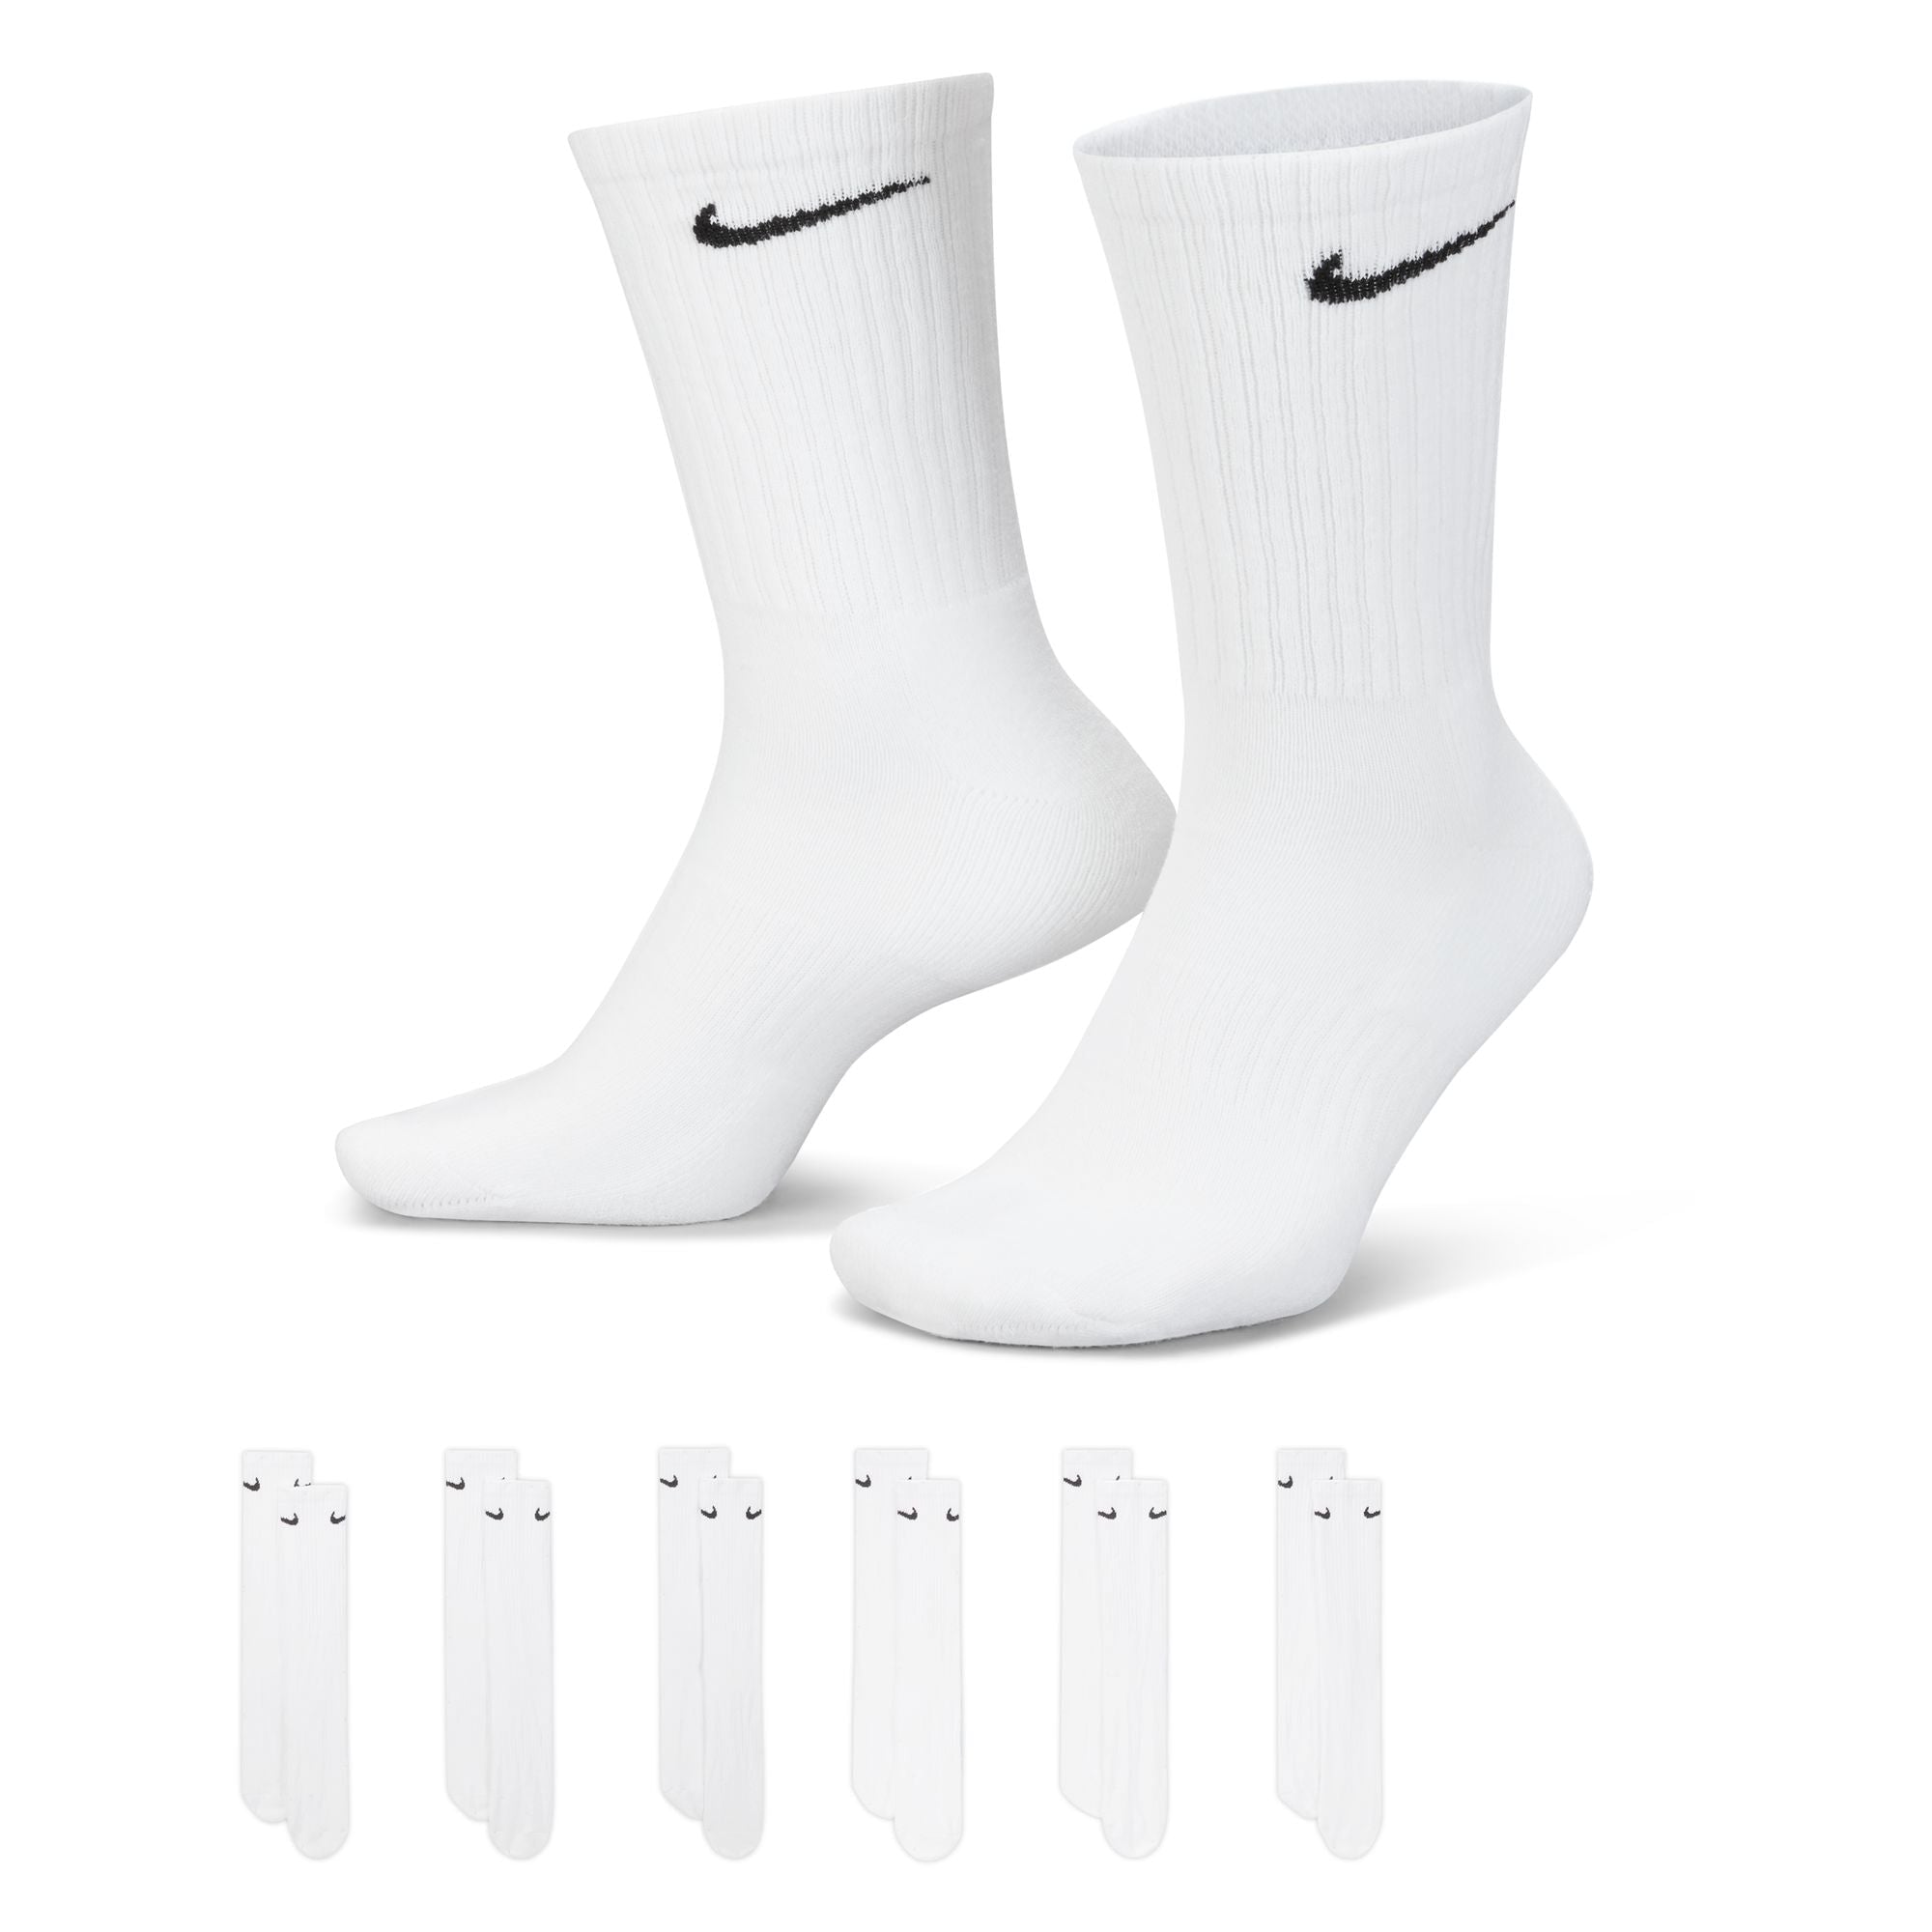 NIKE SB Everyday Cushioned Socken Socken Nike SB 